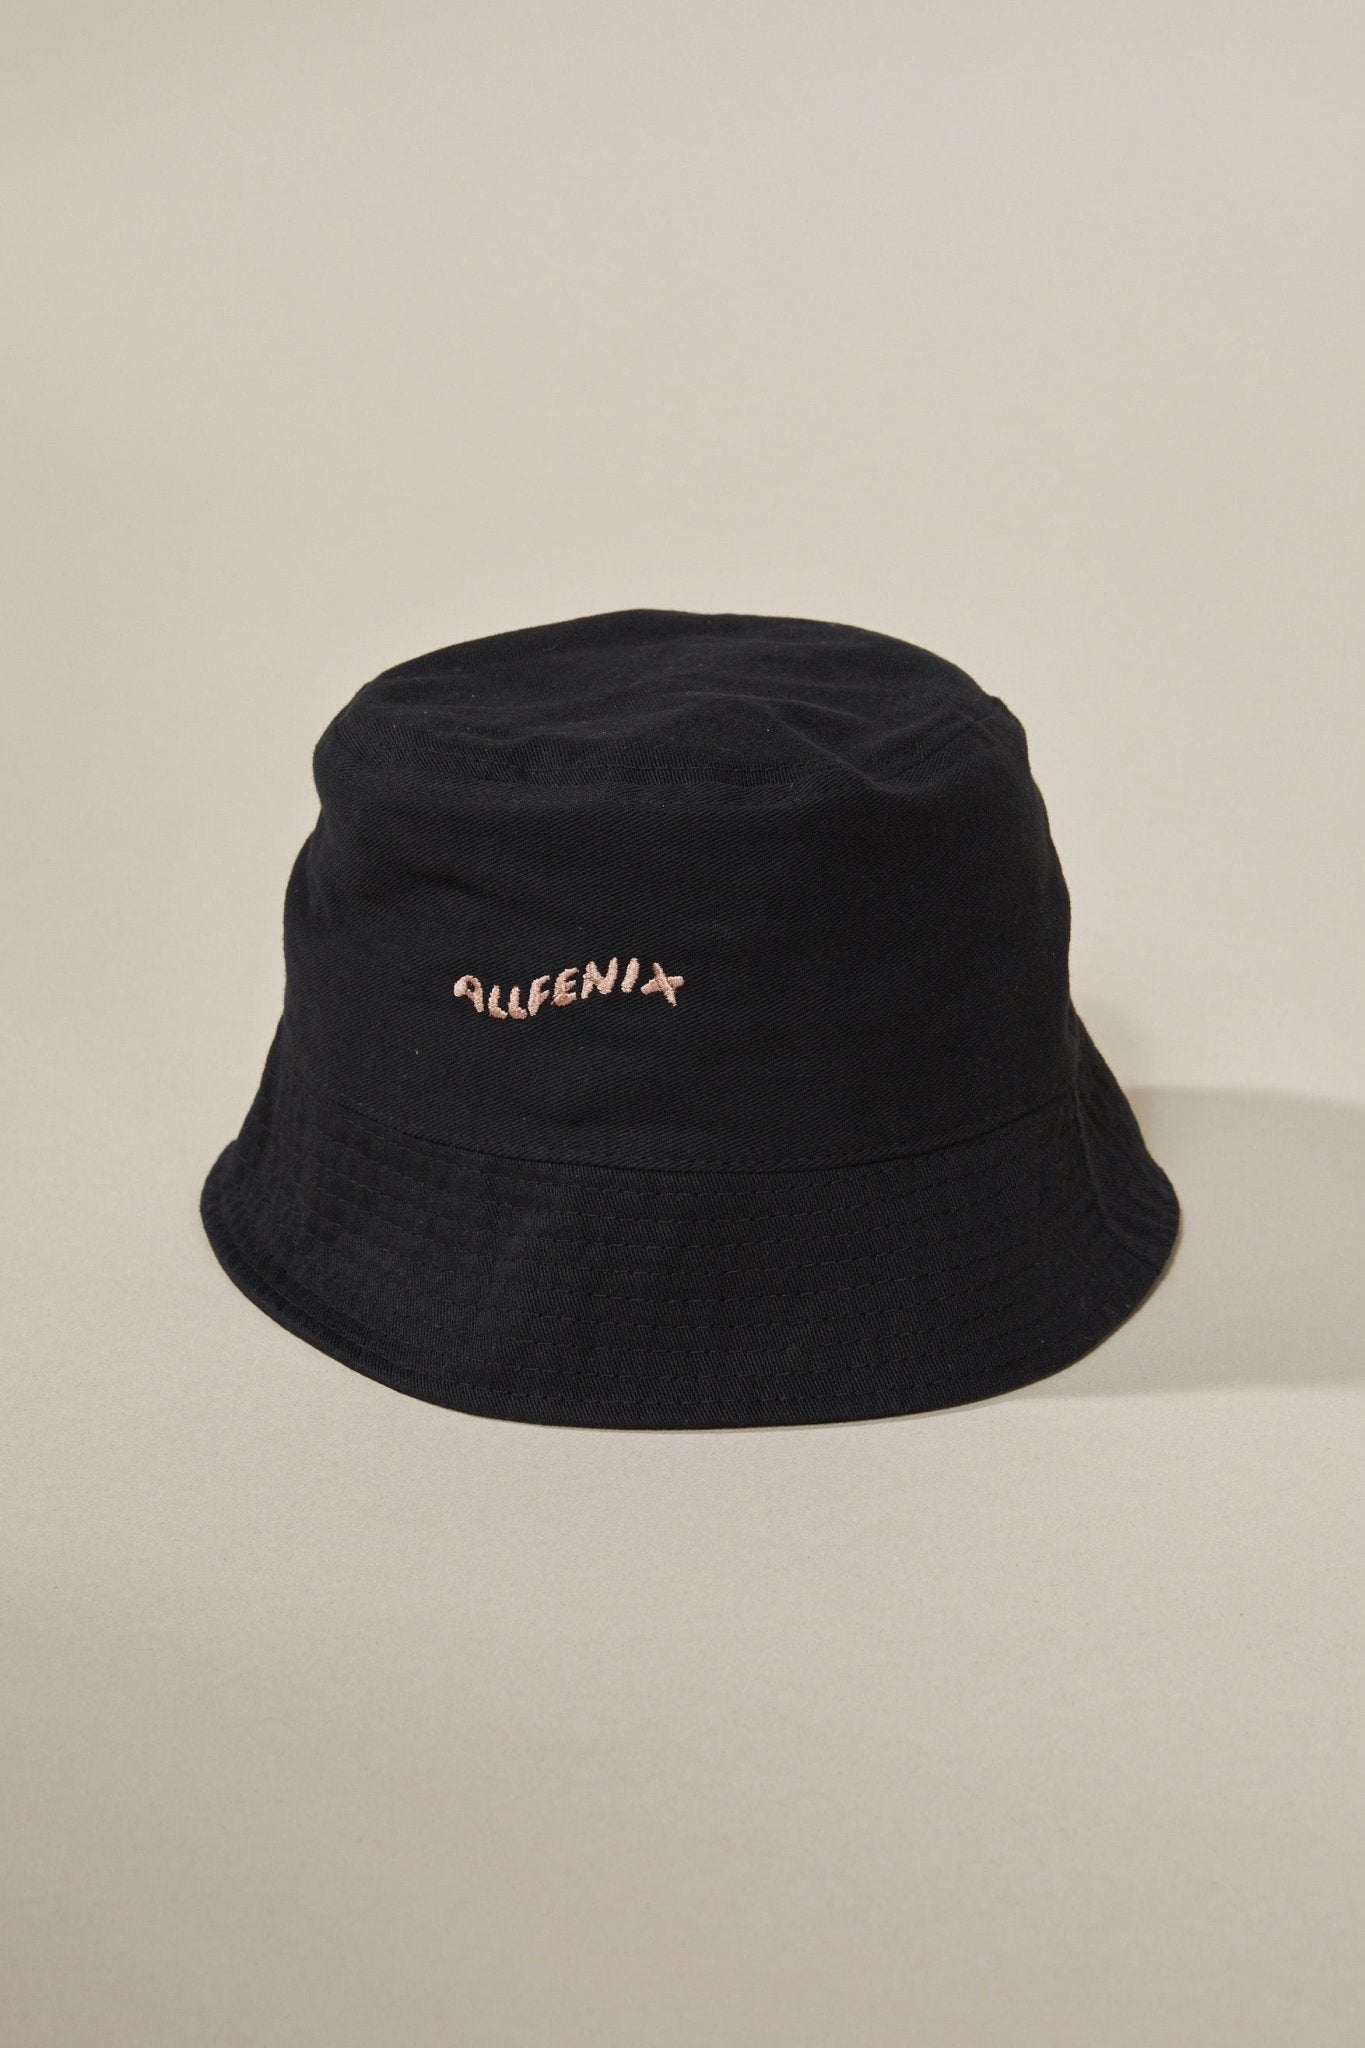 Waves Bucket Hat (Black) - All Fenix